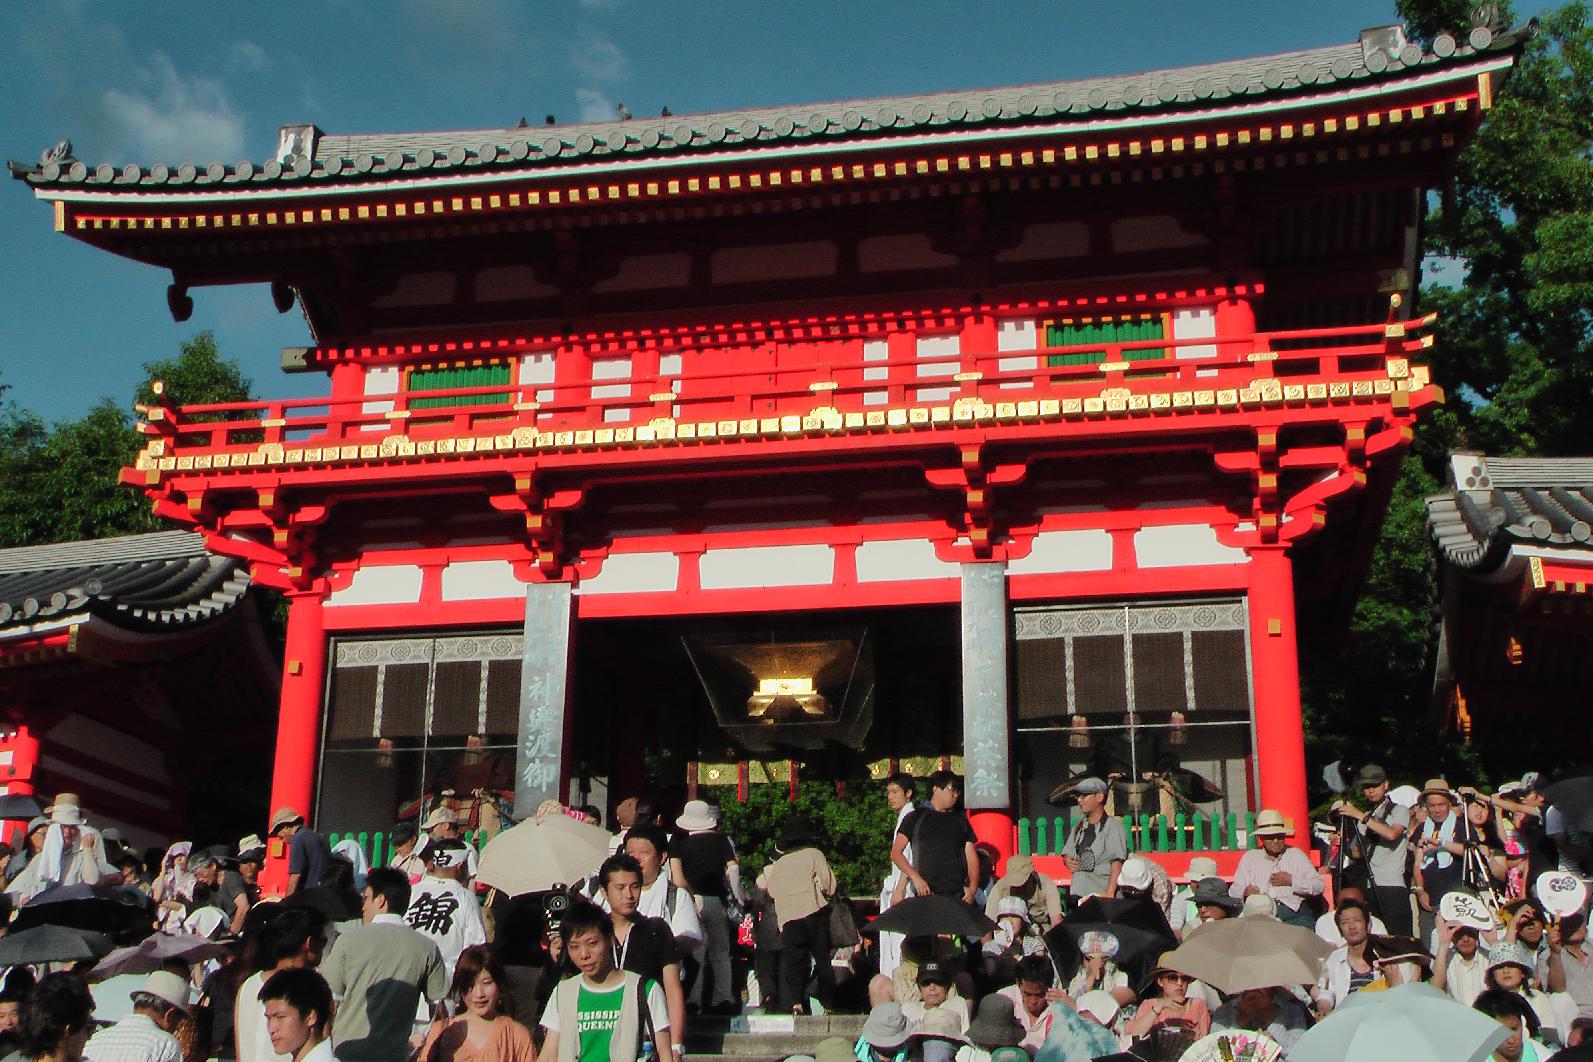 Entrance to the Yasaka Shrine